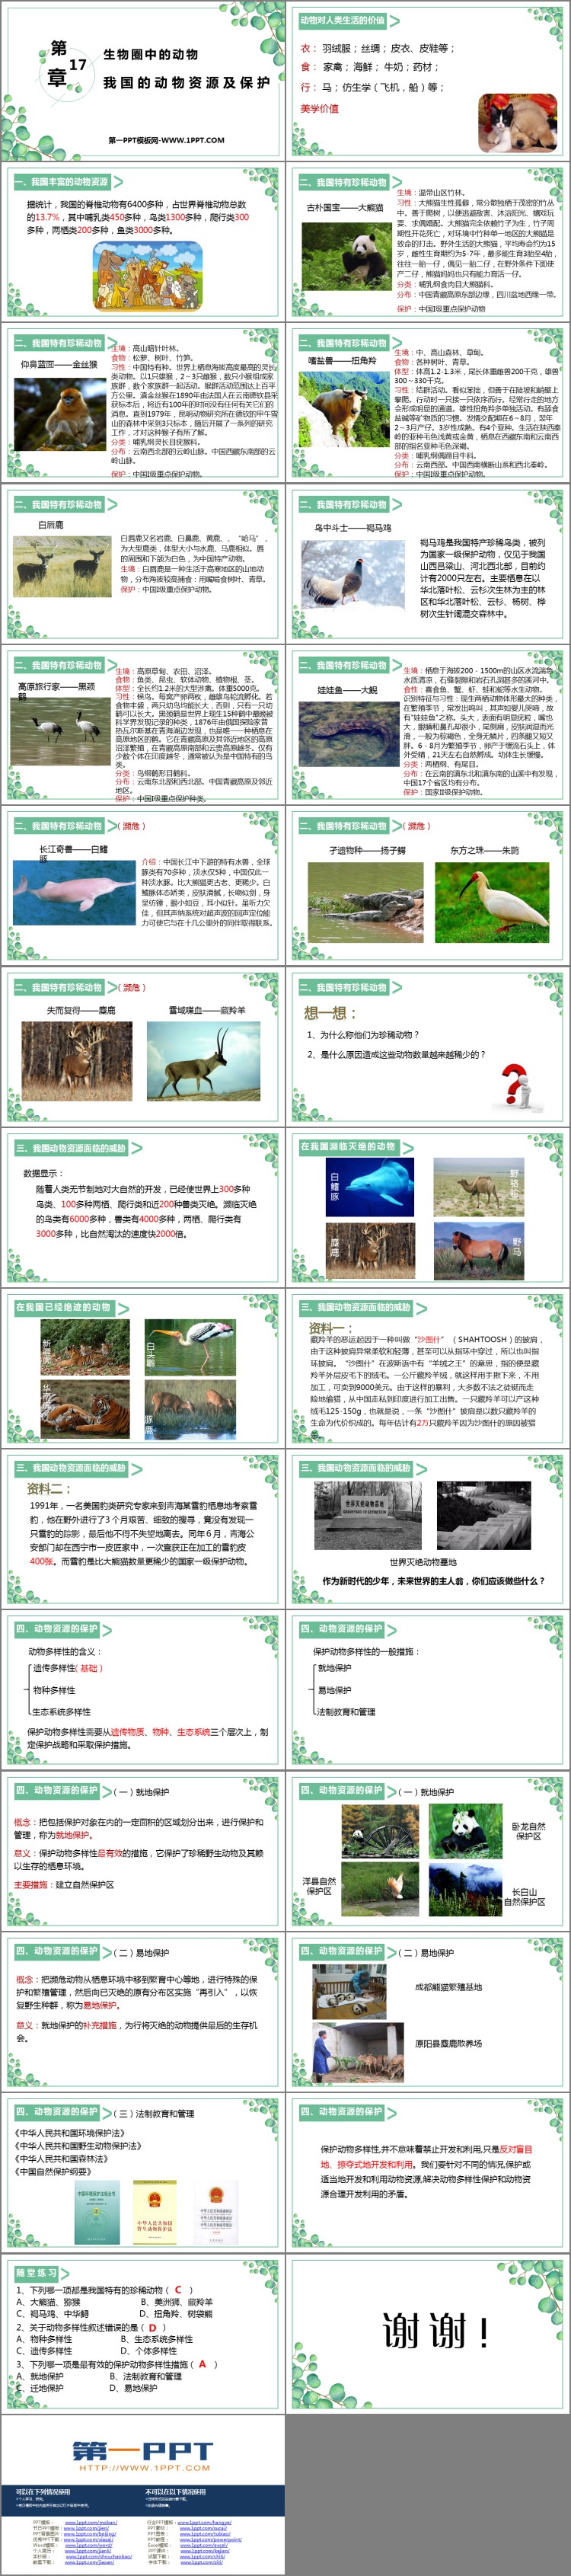 《我国的动物资源及保护》PPT教学课件